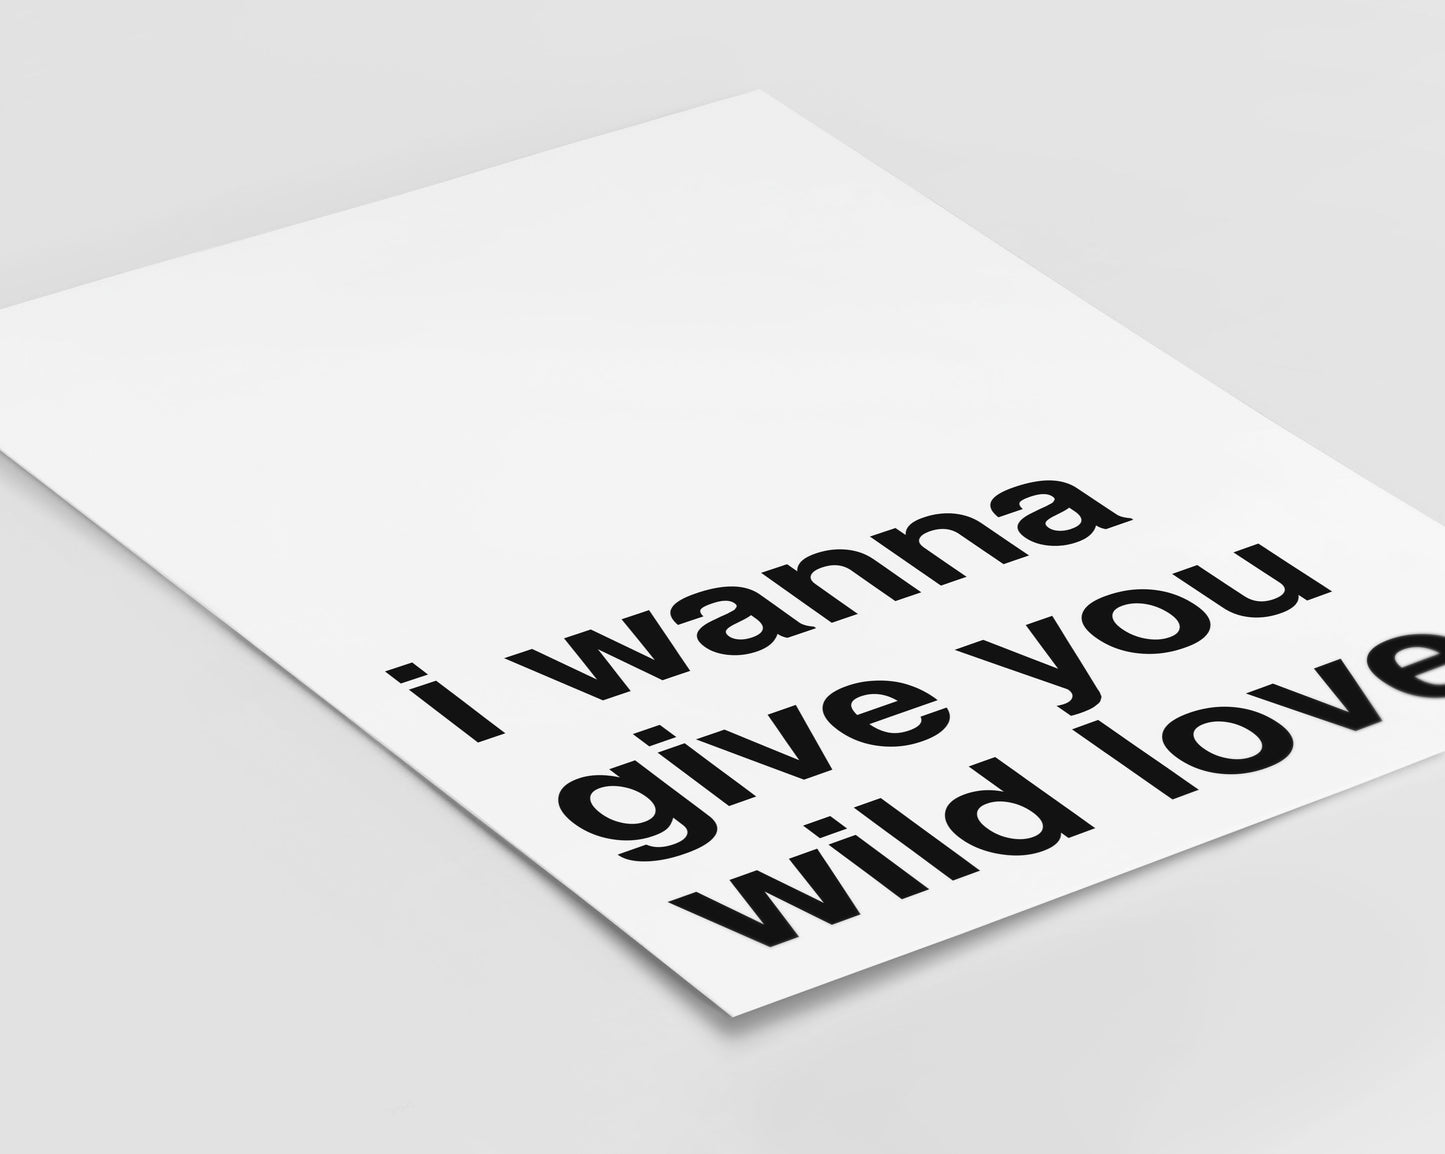 Wild Love Statement White Print